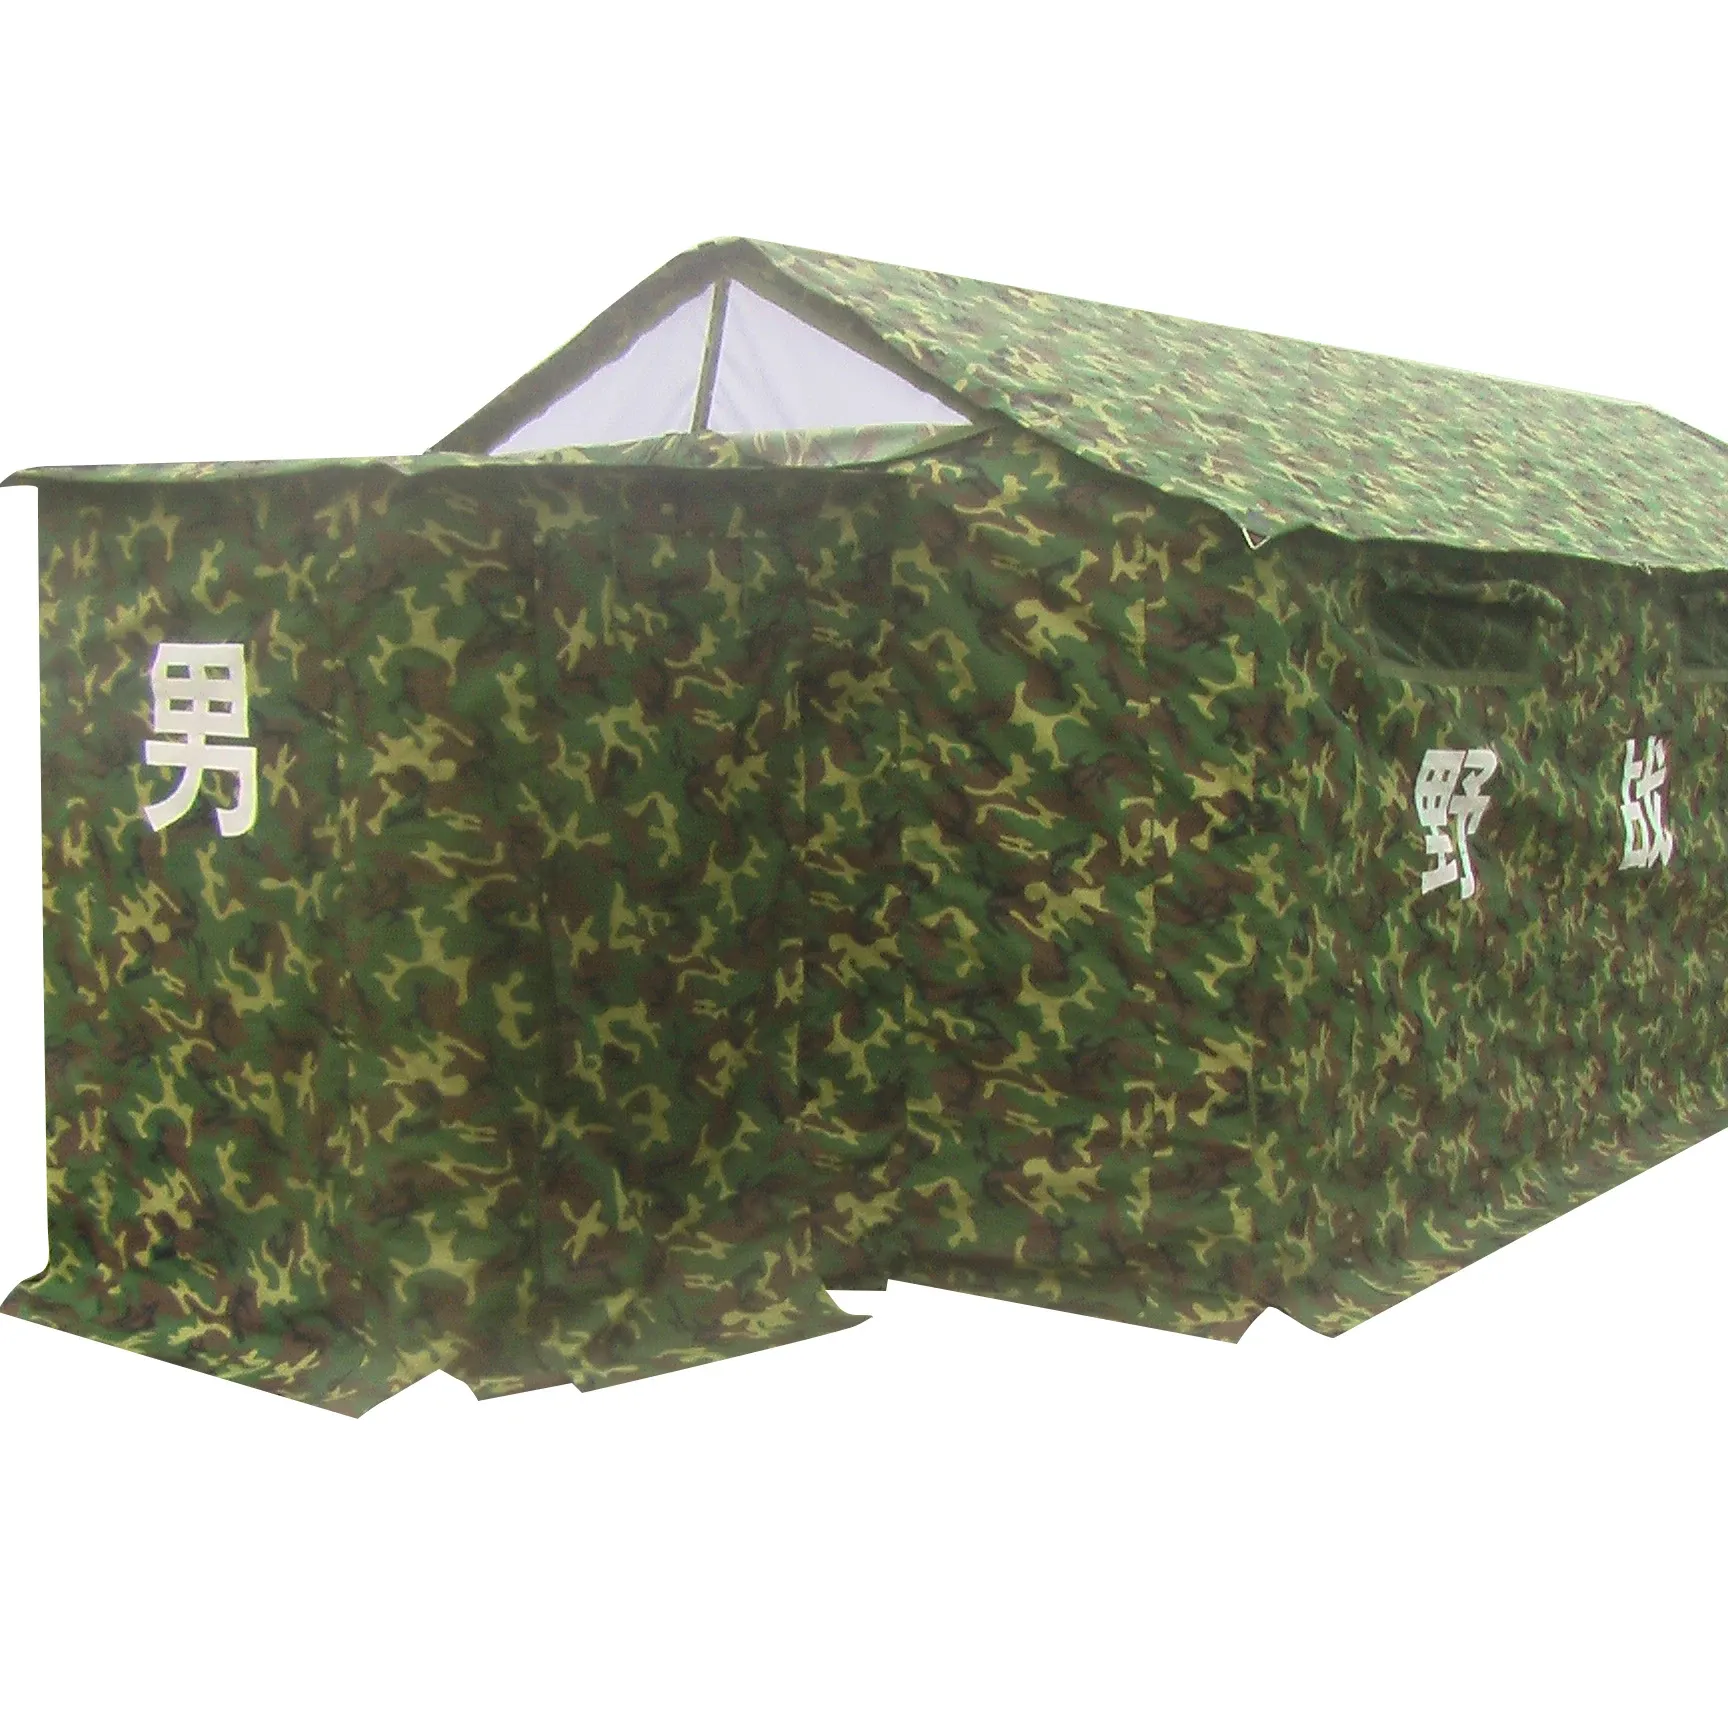 Aosener tenda da campeggio per attrezzi da campeggio all'aperto tenda da toilette in tela impermeabile utilizzata in condizioni di campo